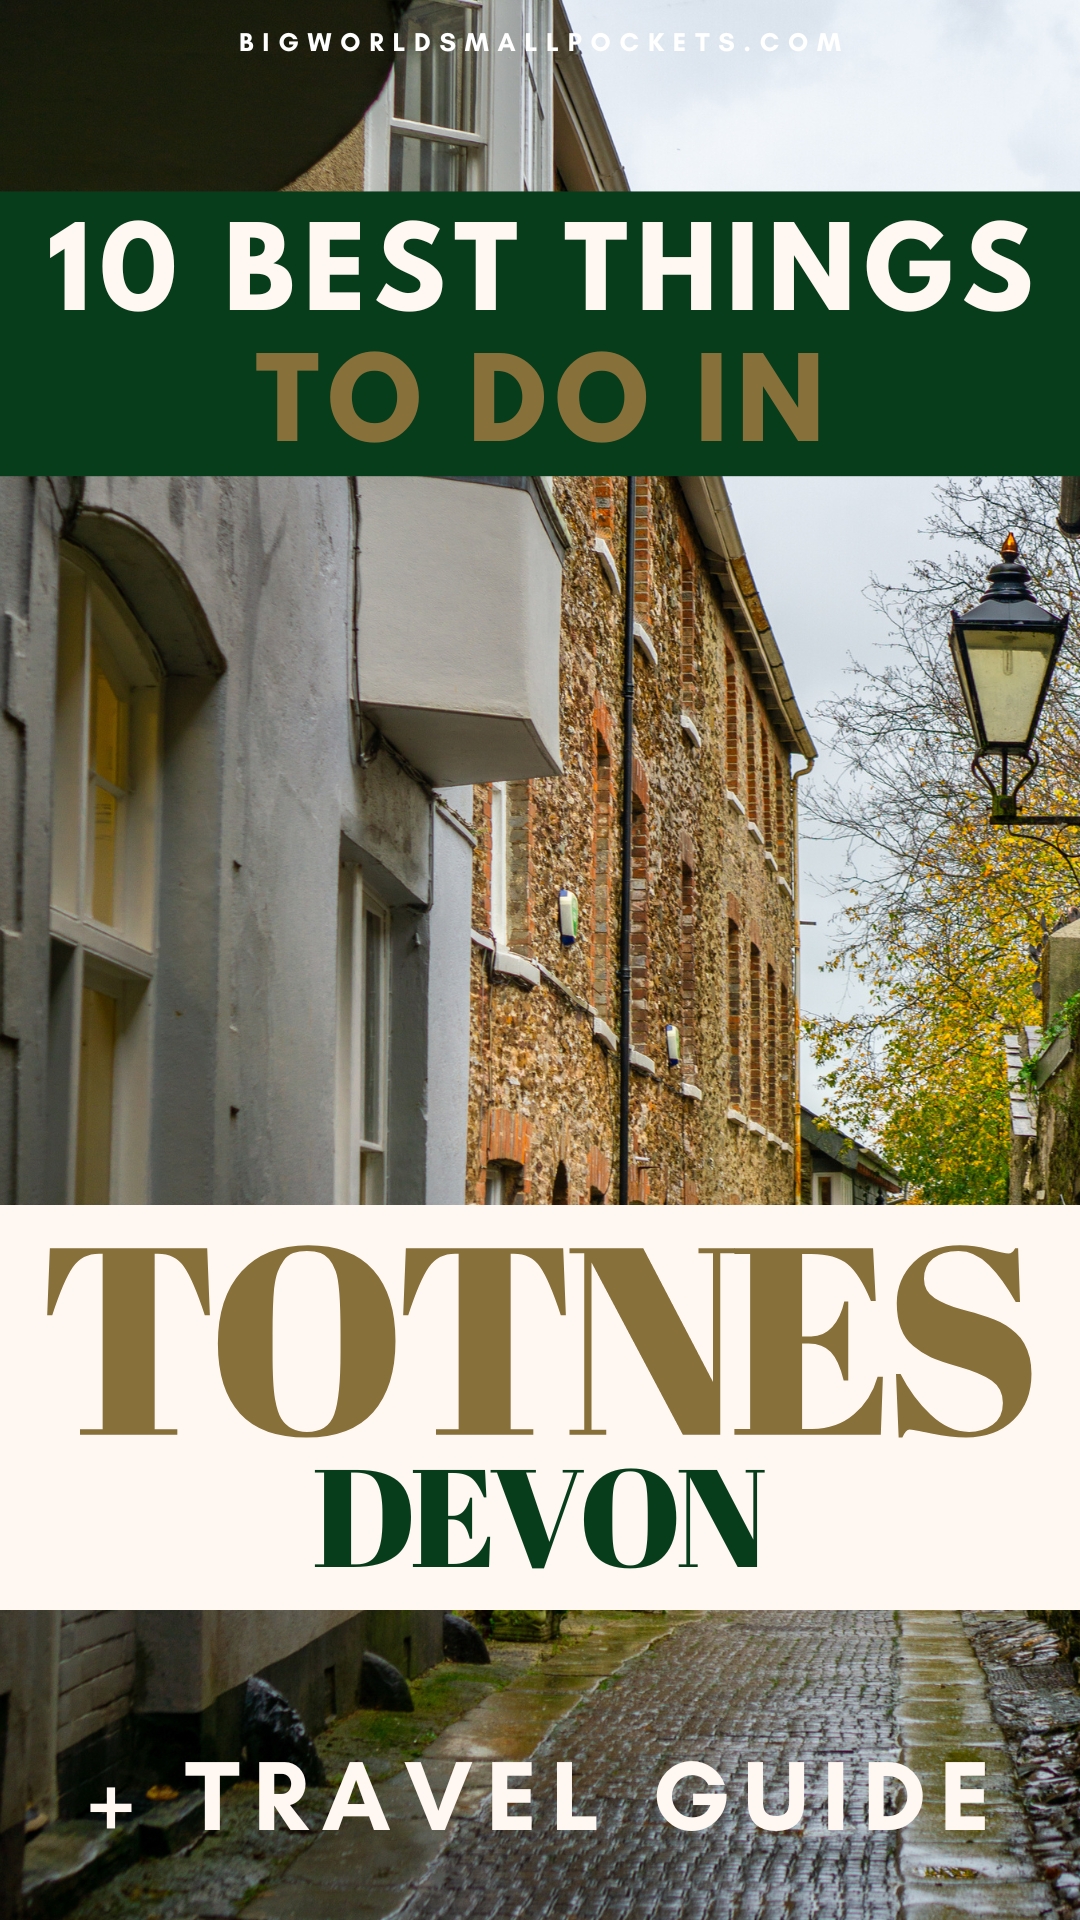 Top 10 Things to Do in Totnes, Devon